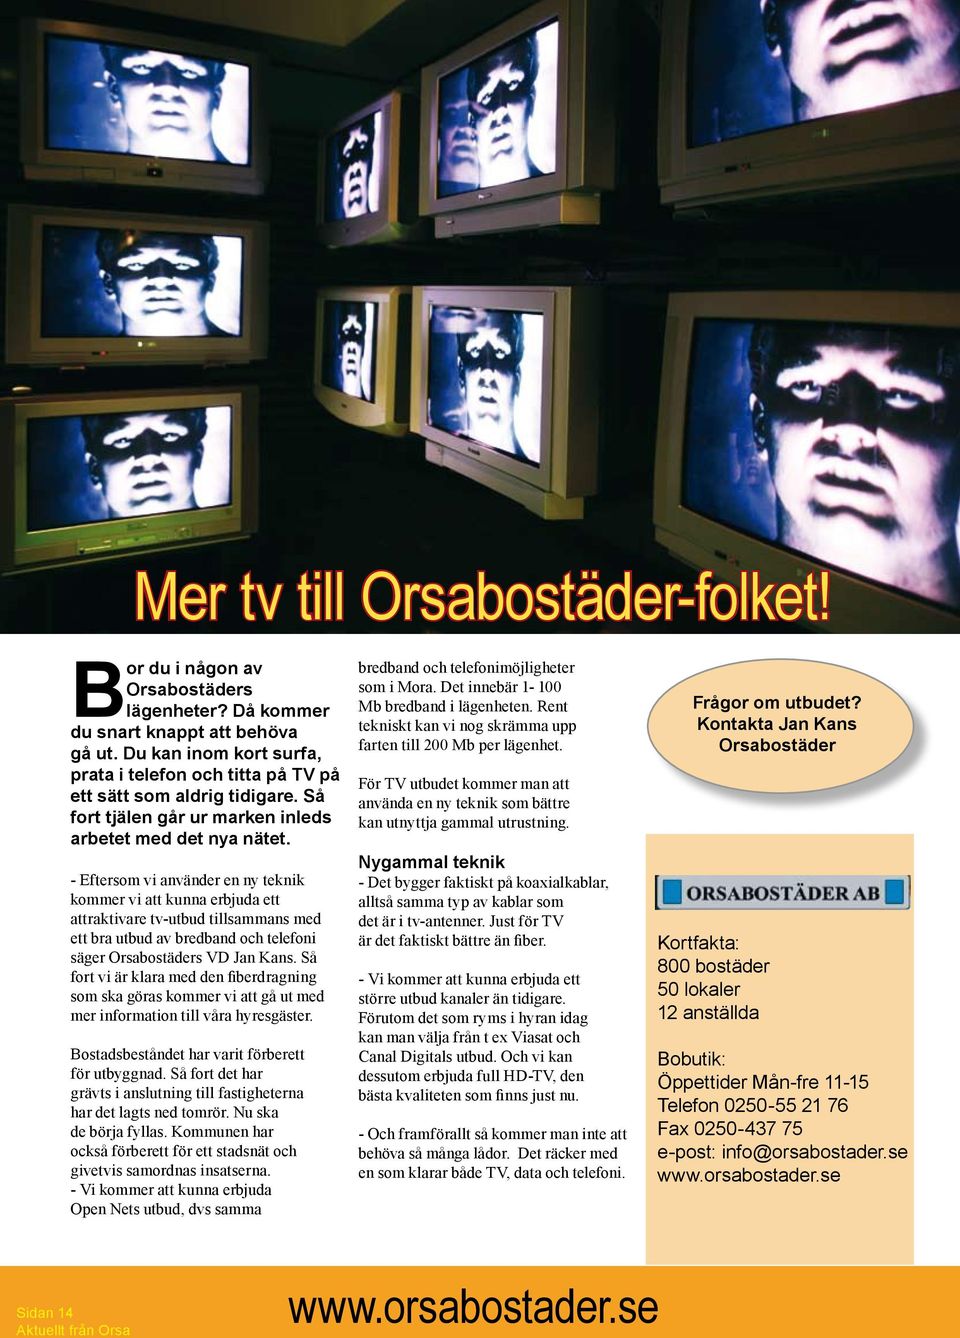 - Eftersom vi använder en ny teknik kommer vi att kunna erbjuda ett attraktivare tv-utbud tillsammans med ett bra utbud av bredband och telefoni säger Orsabostäders VD Jan Kans.